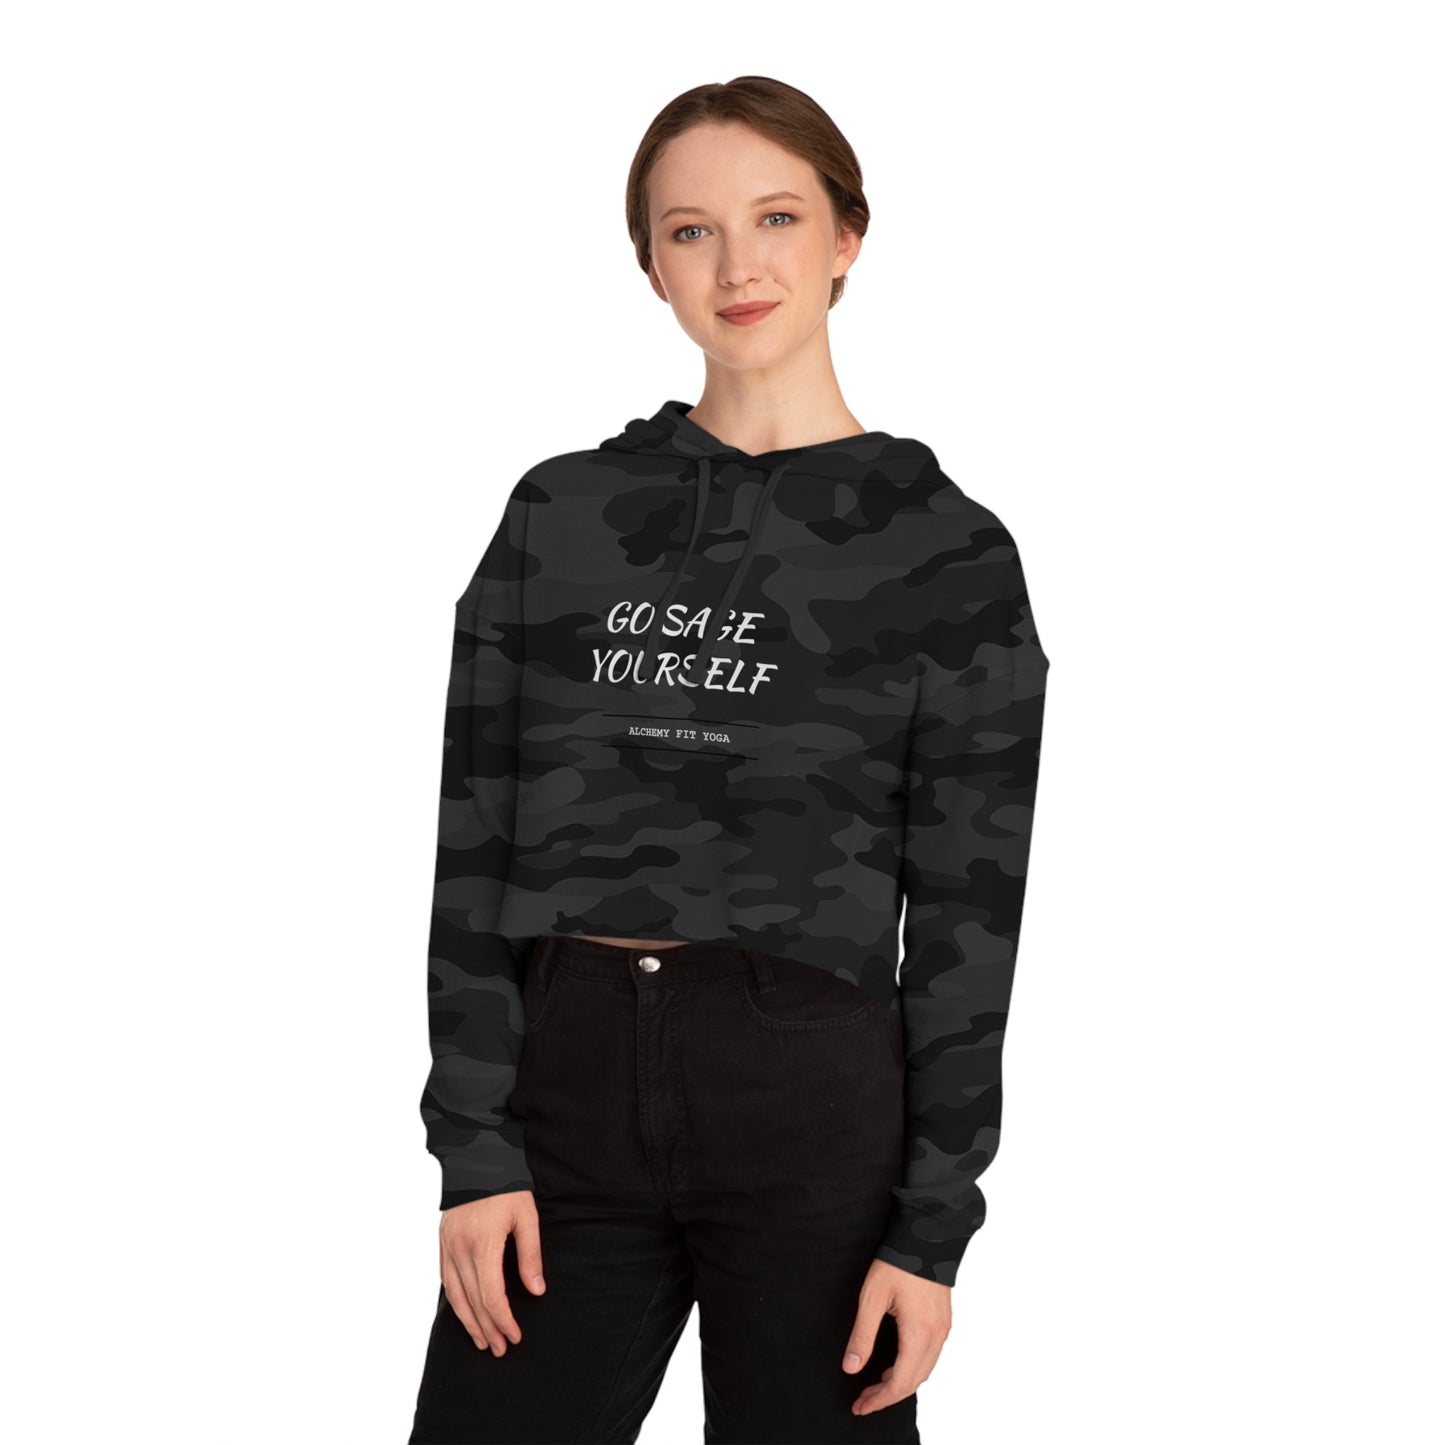 women’s cropped hooded sweatshirt | go sage yourself